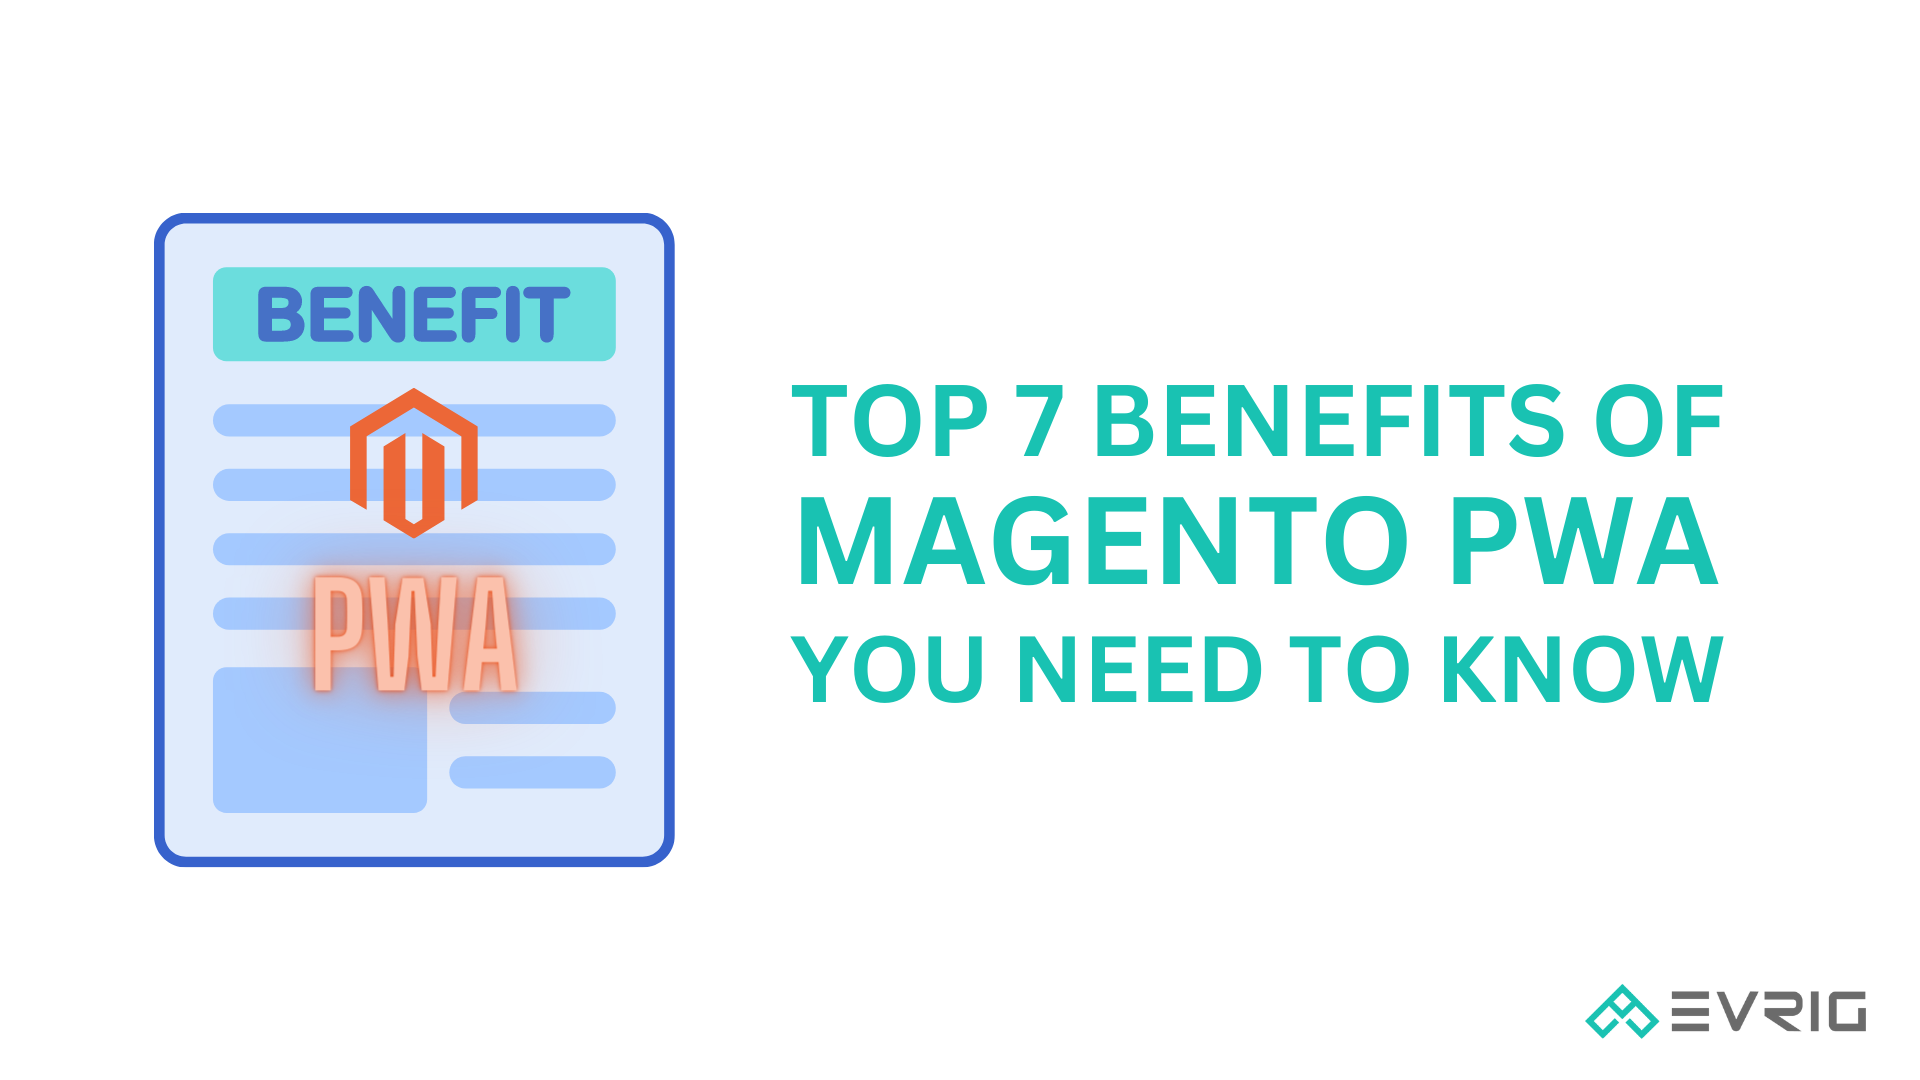 Benefits of Magento PWA